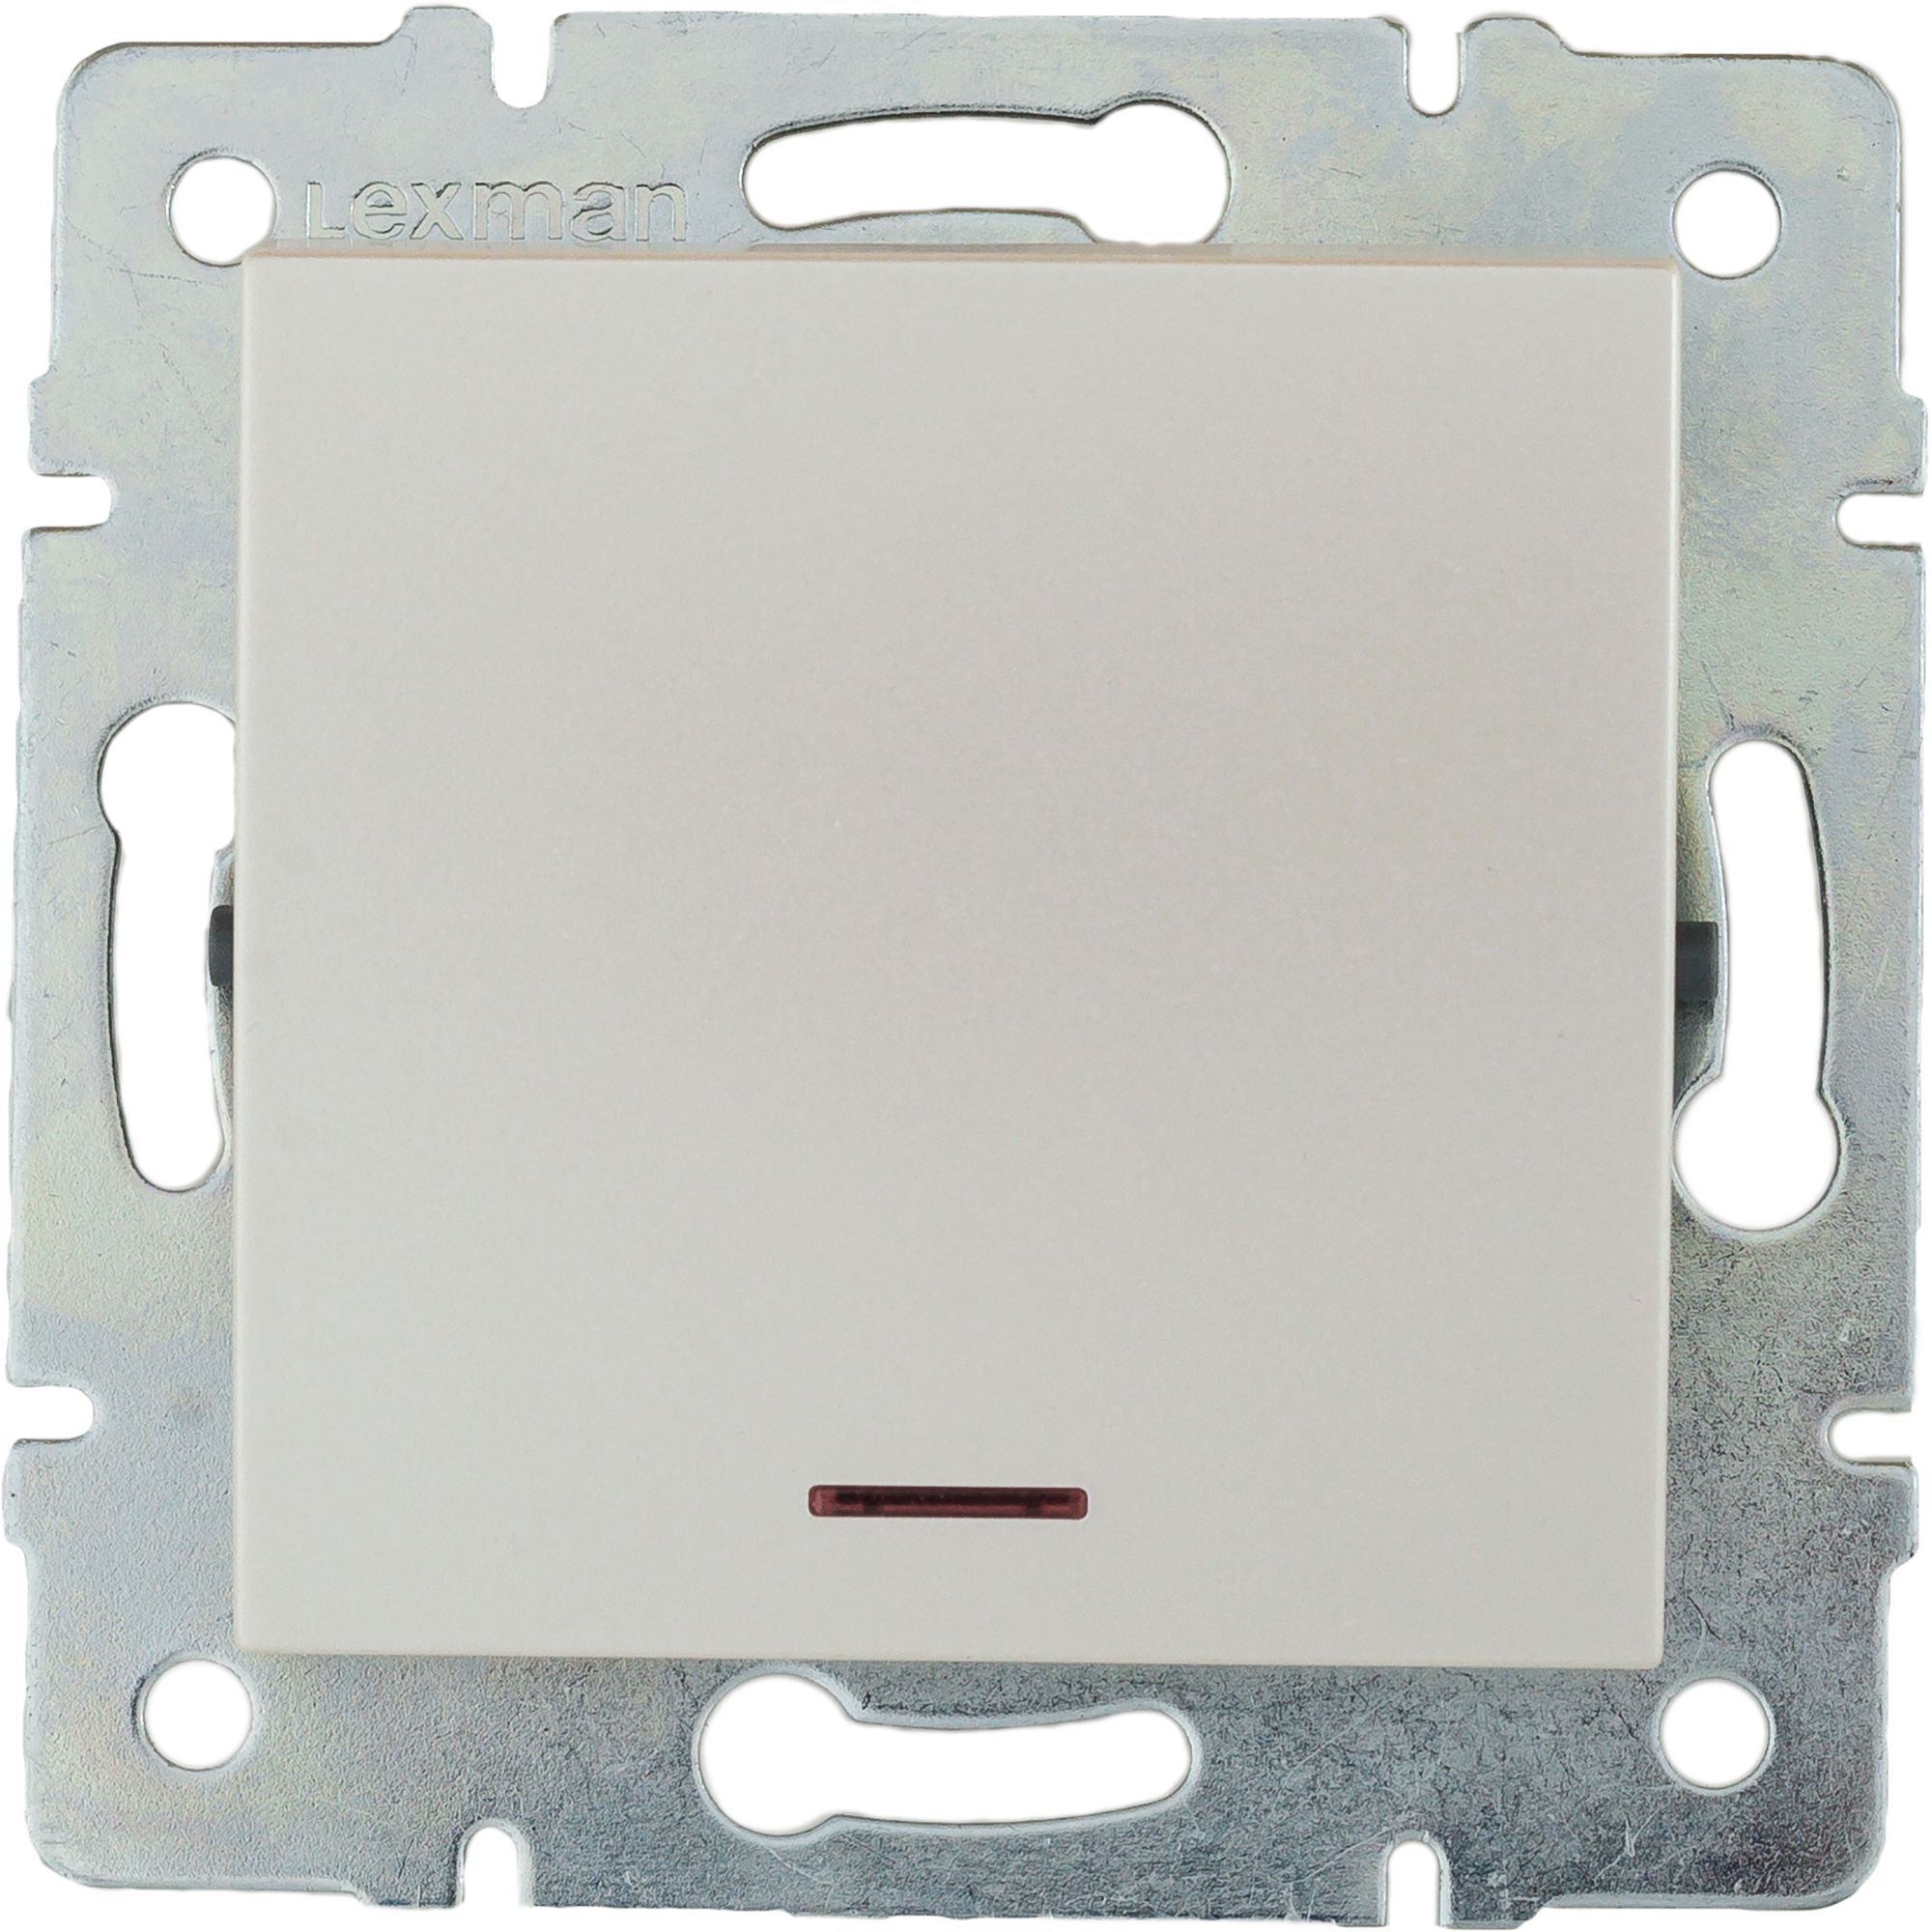 17920241 Выключатель встраиваемый 1 клавиша с подсветкой, цвет жемчужно-белый матовый Виктория STLM-0009021 LEXMAN